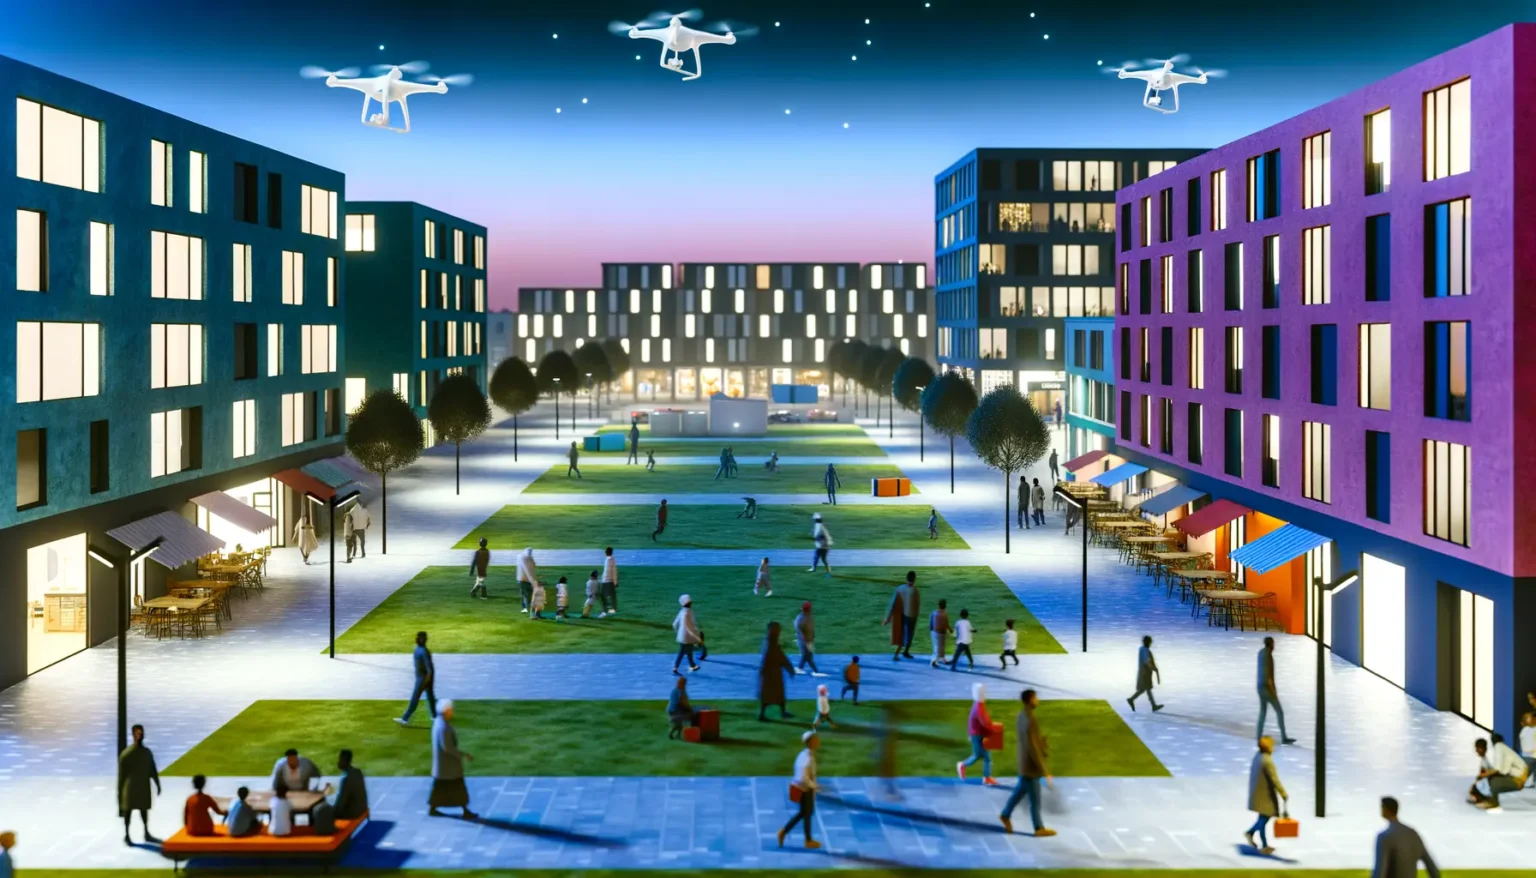 Blick auf eine futuristische städtische Promenade in der Dämmerung mit Menschen, die flanieren und sitzen, umgeben von modernen mehrstöckigen Gebäuden in leuchtenden Farben. Über dem Platz schweben einige Drohnen im hellen Abendhimmel.